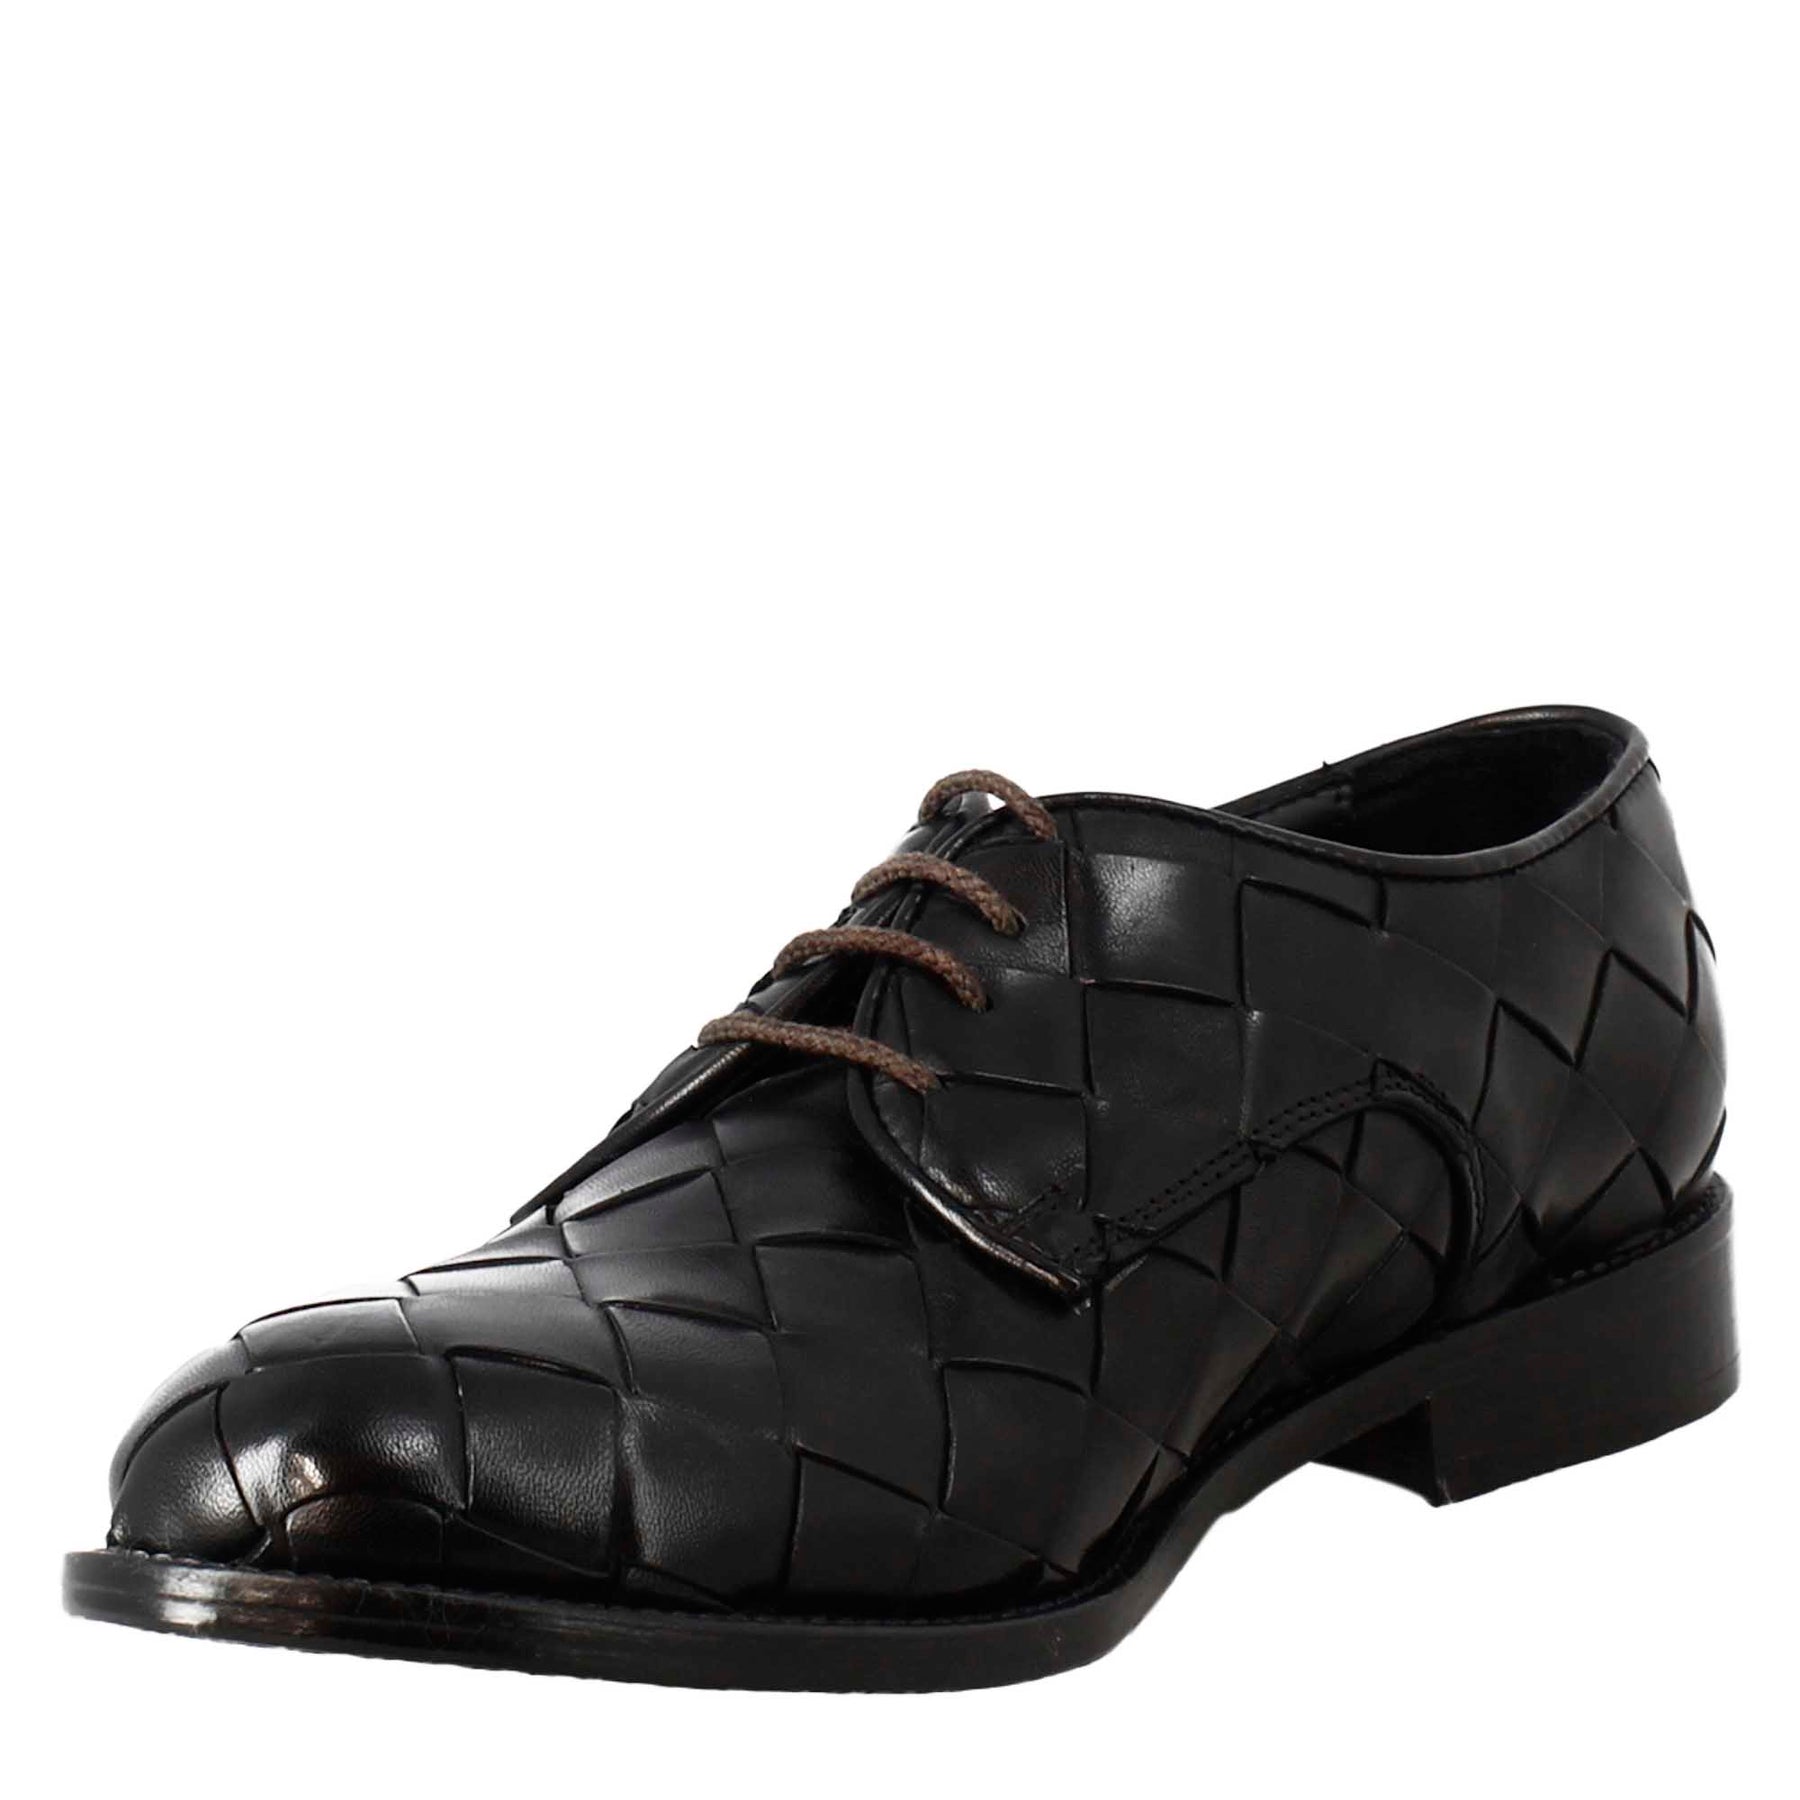 Elegant vintage black derby for men in woven leather